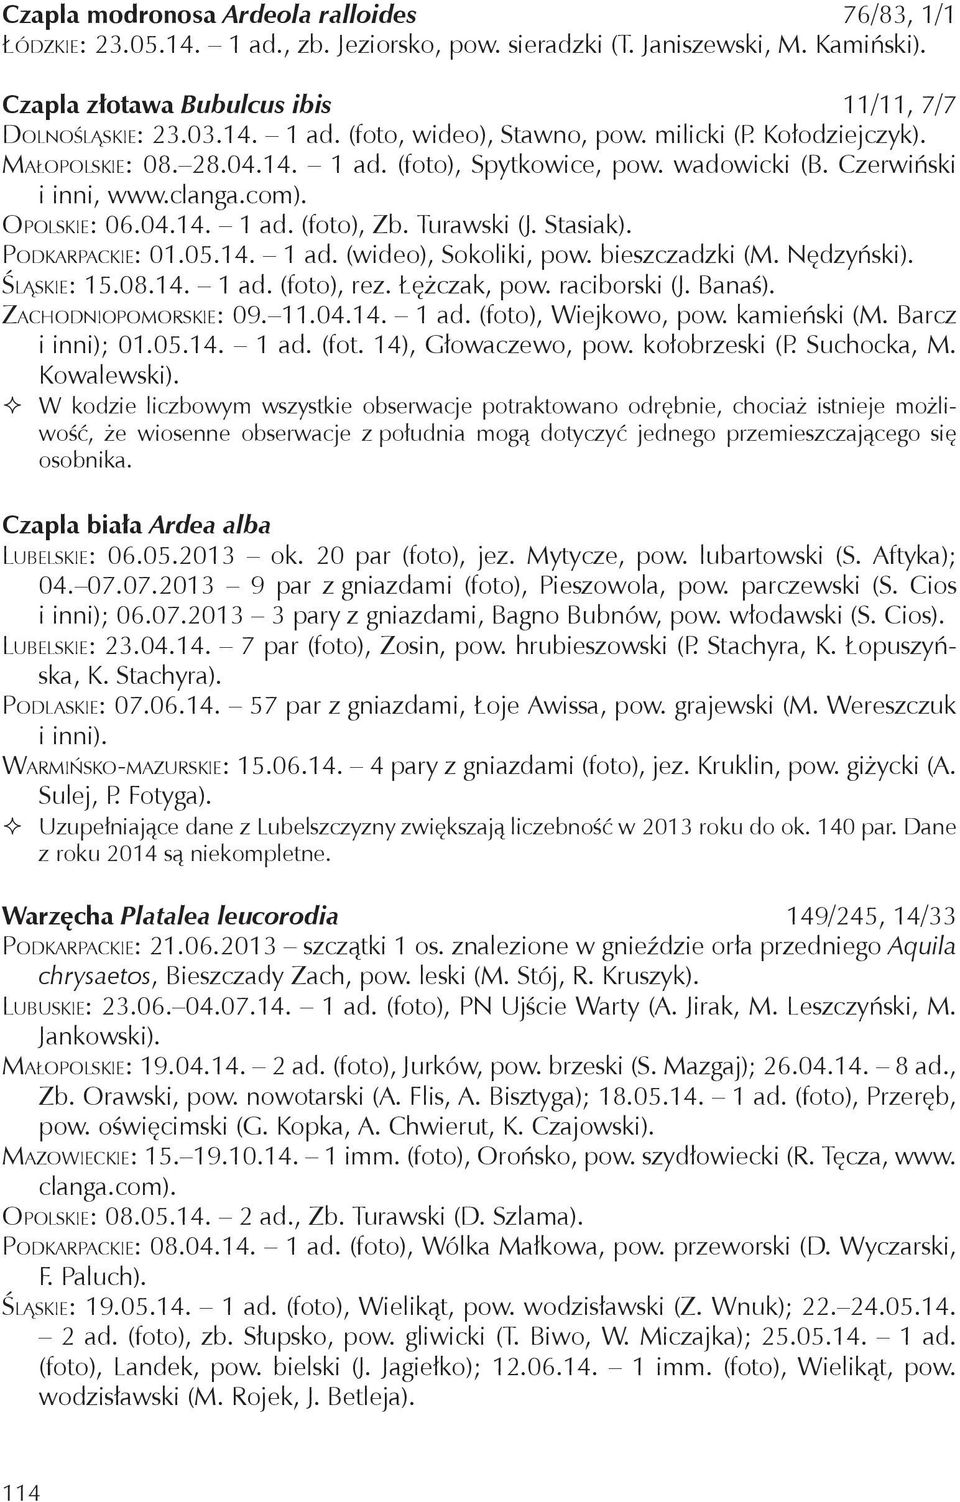 Podkarpackie: 01.05.14. 1 ad. (wideo), Sokoliki, pow. bieszczadzki (M. Nędzyński). Śląskie: 15.08.14. 1 ad. (foto), rez. Łężczak, pow. raciborski (J. Banaś). Zachodniopomorskie: 09. 11.04.14. 1 ad. (foto), Wiejkowo, pow.